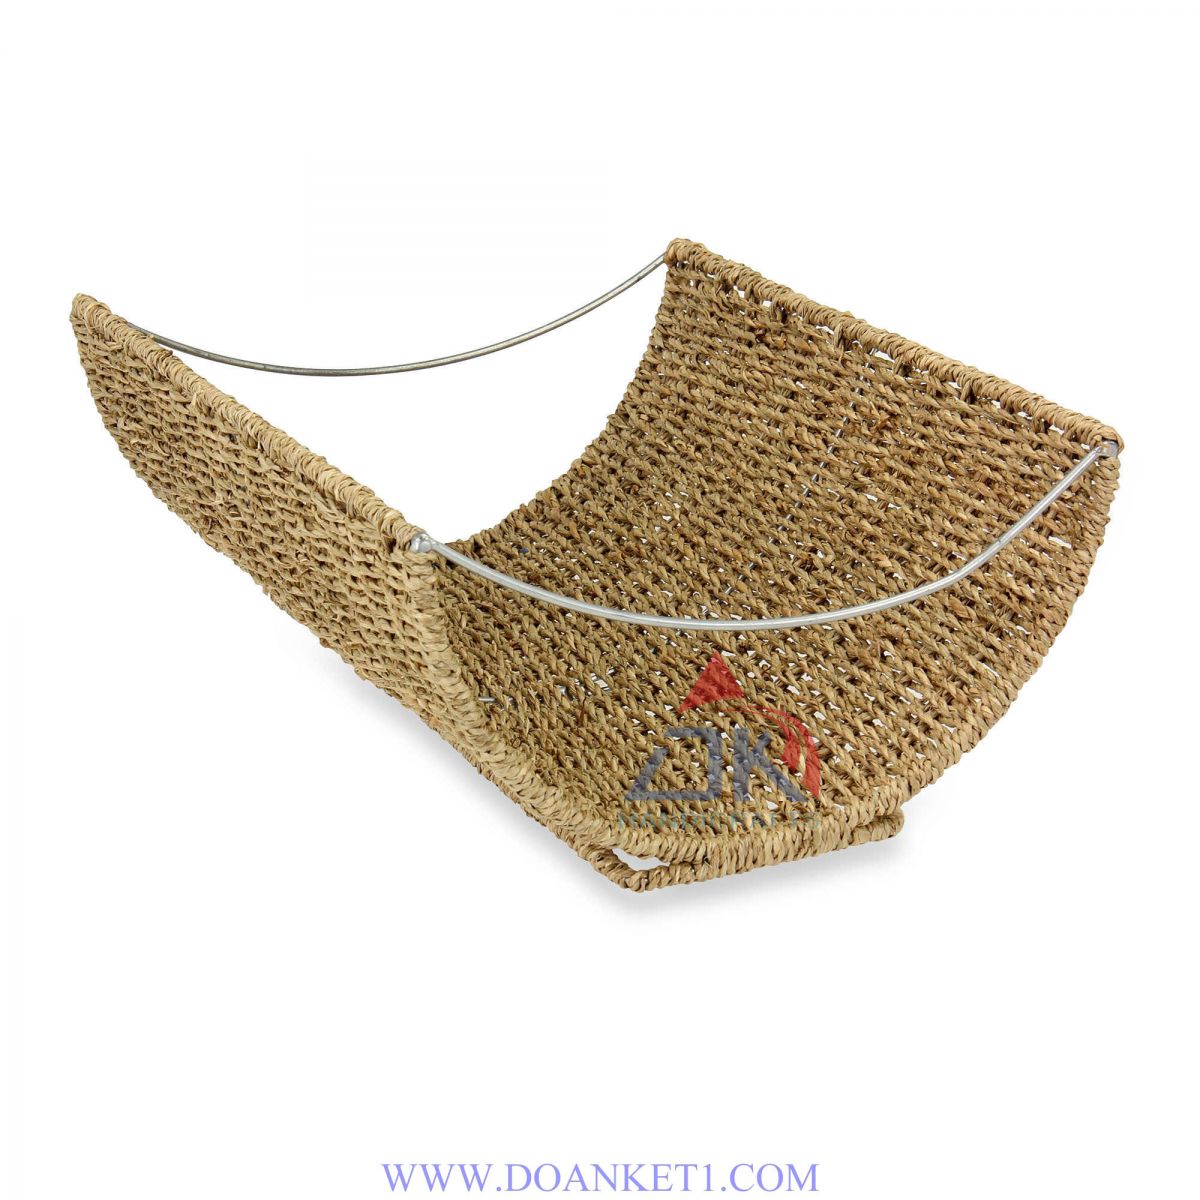 Seagrass Basket # DK251